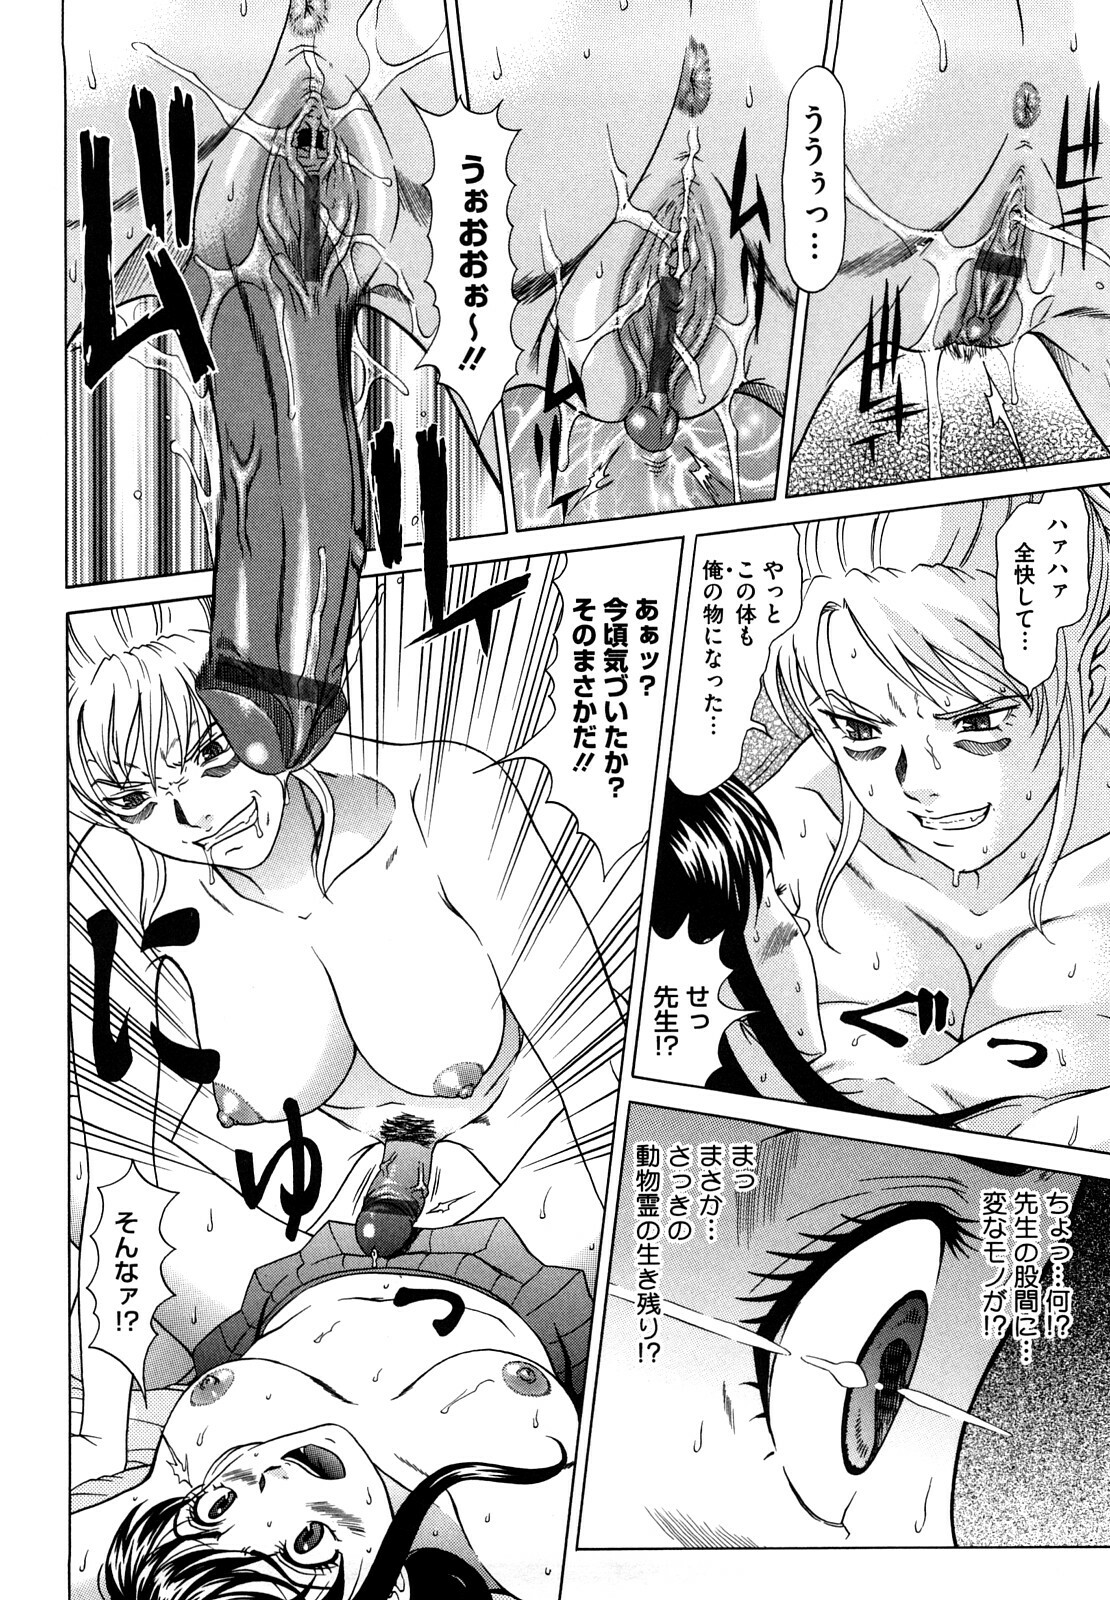 [Kurono Masakado] Nocturnal page 51 full